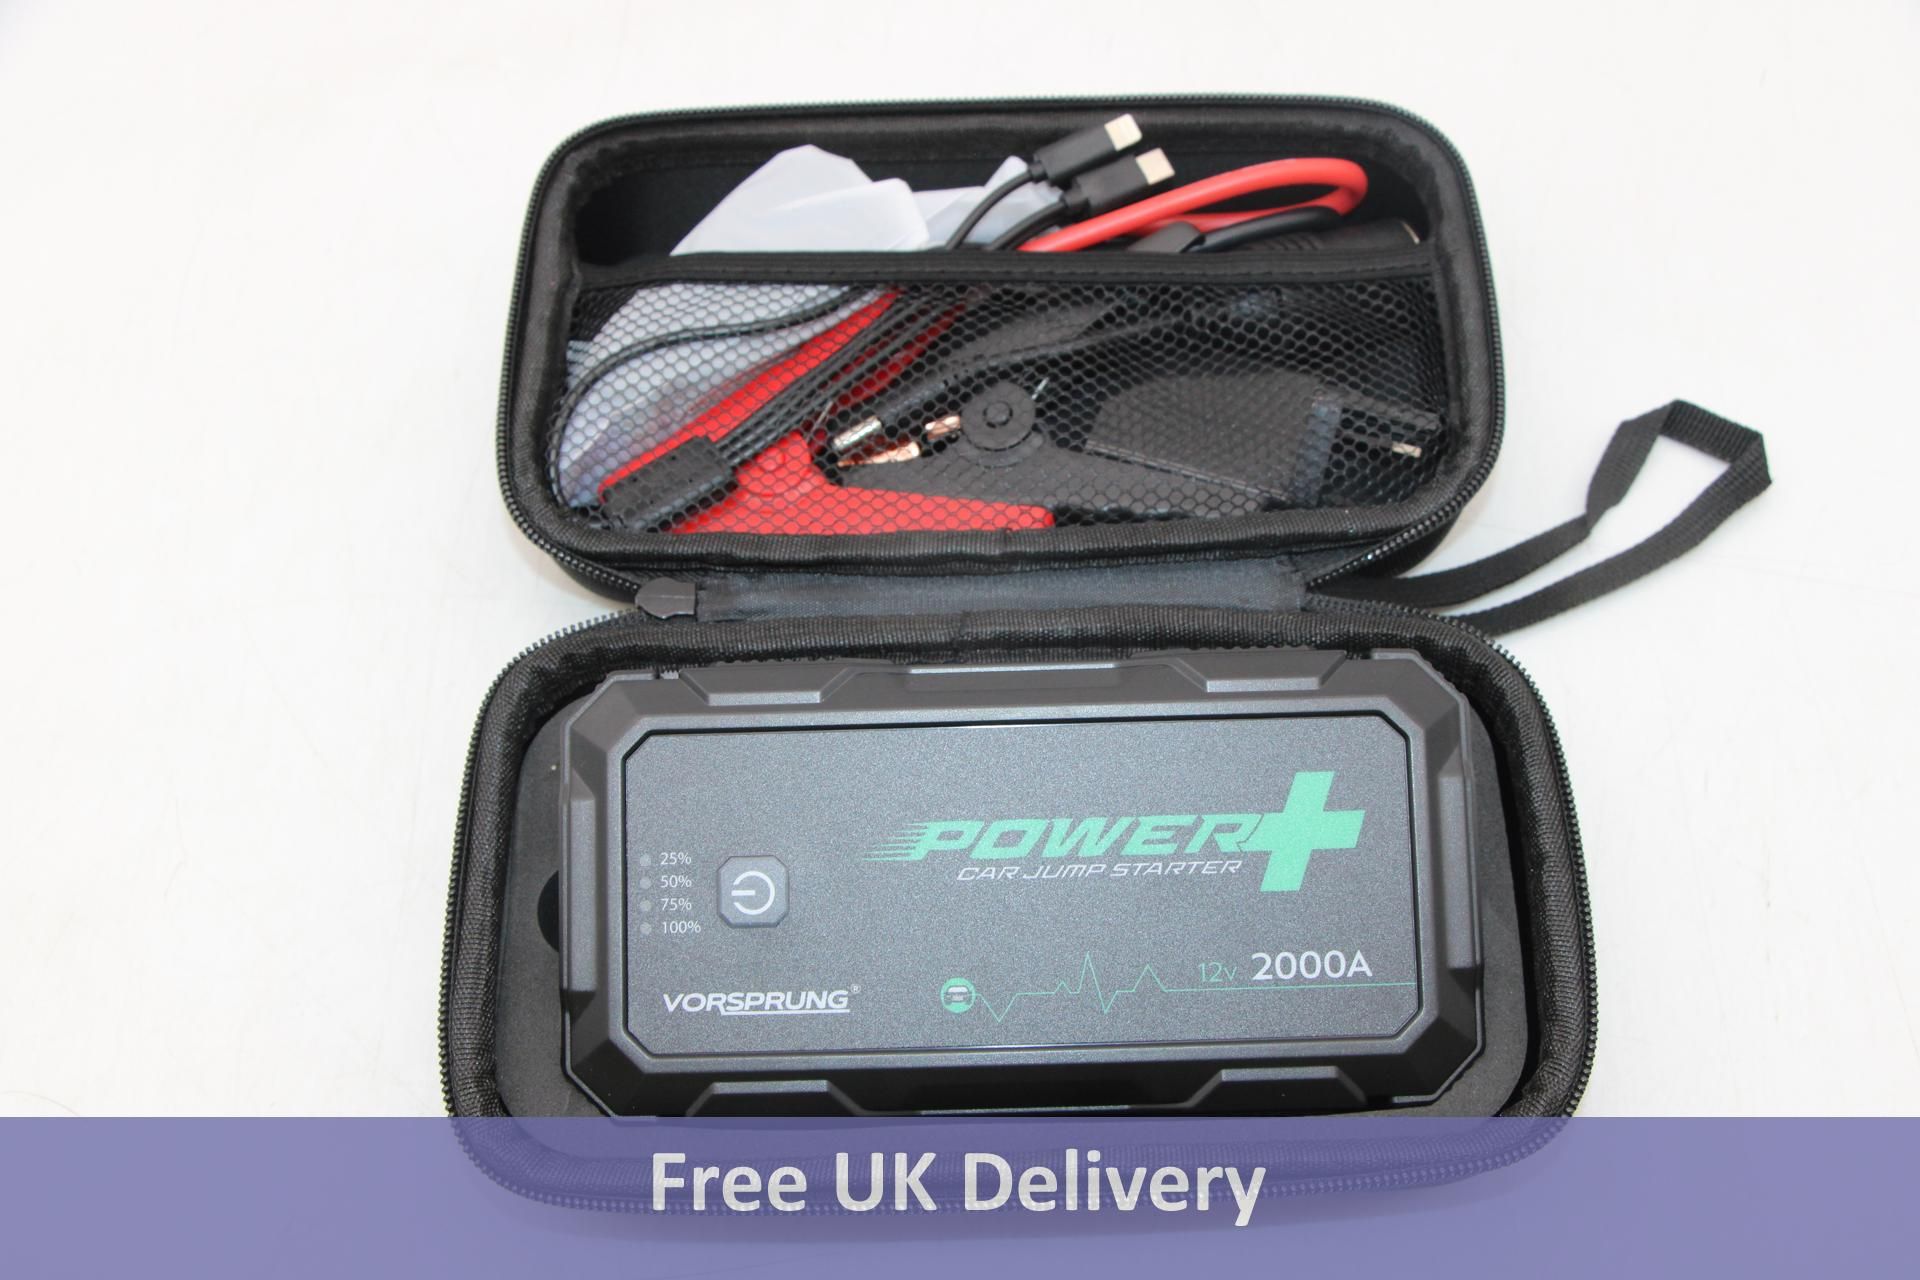 Vorsprung Power+, UK747, 2000A, Car Jump Starter Kit with LED Torch, Black